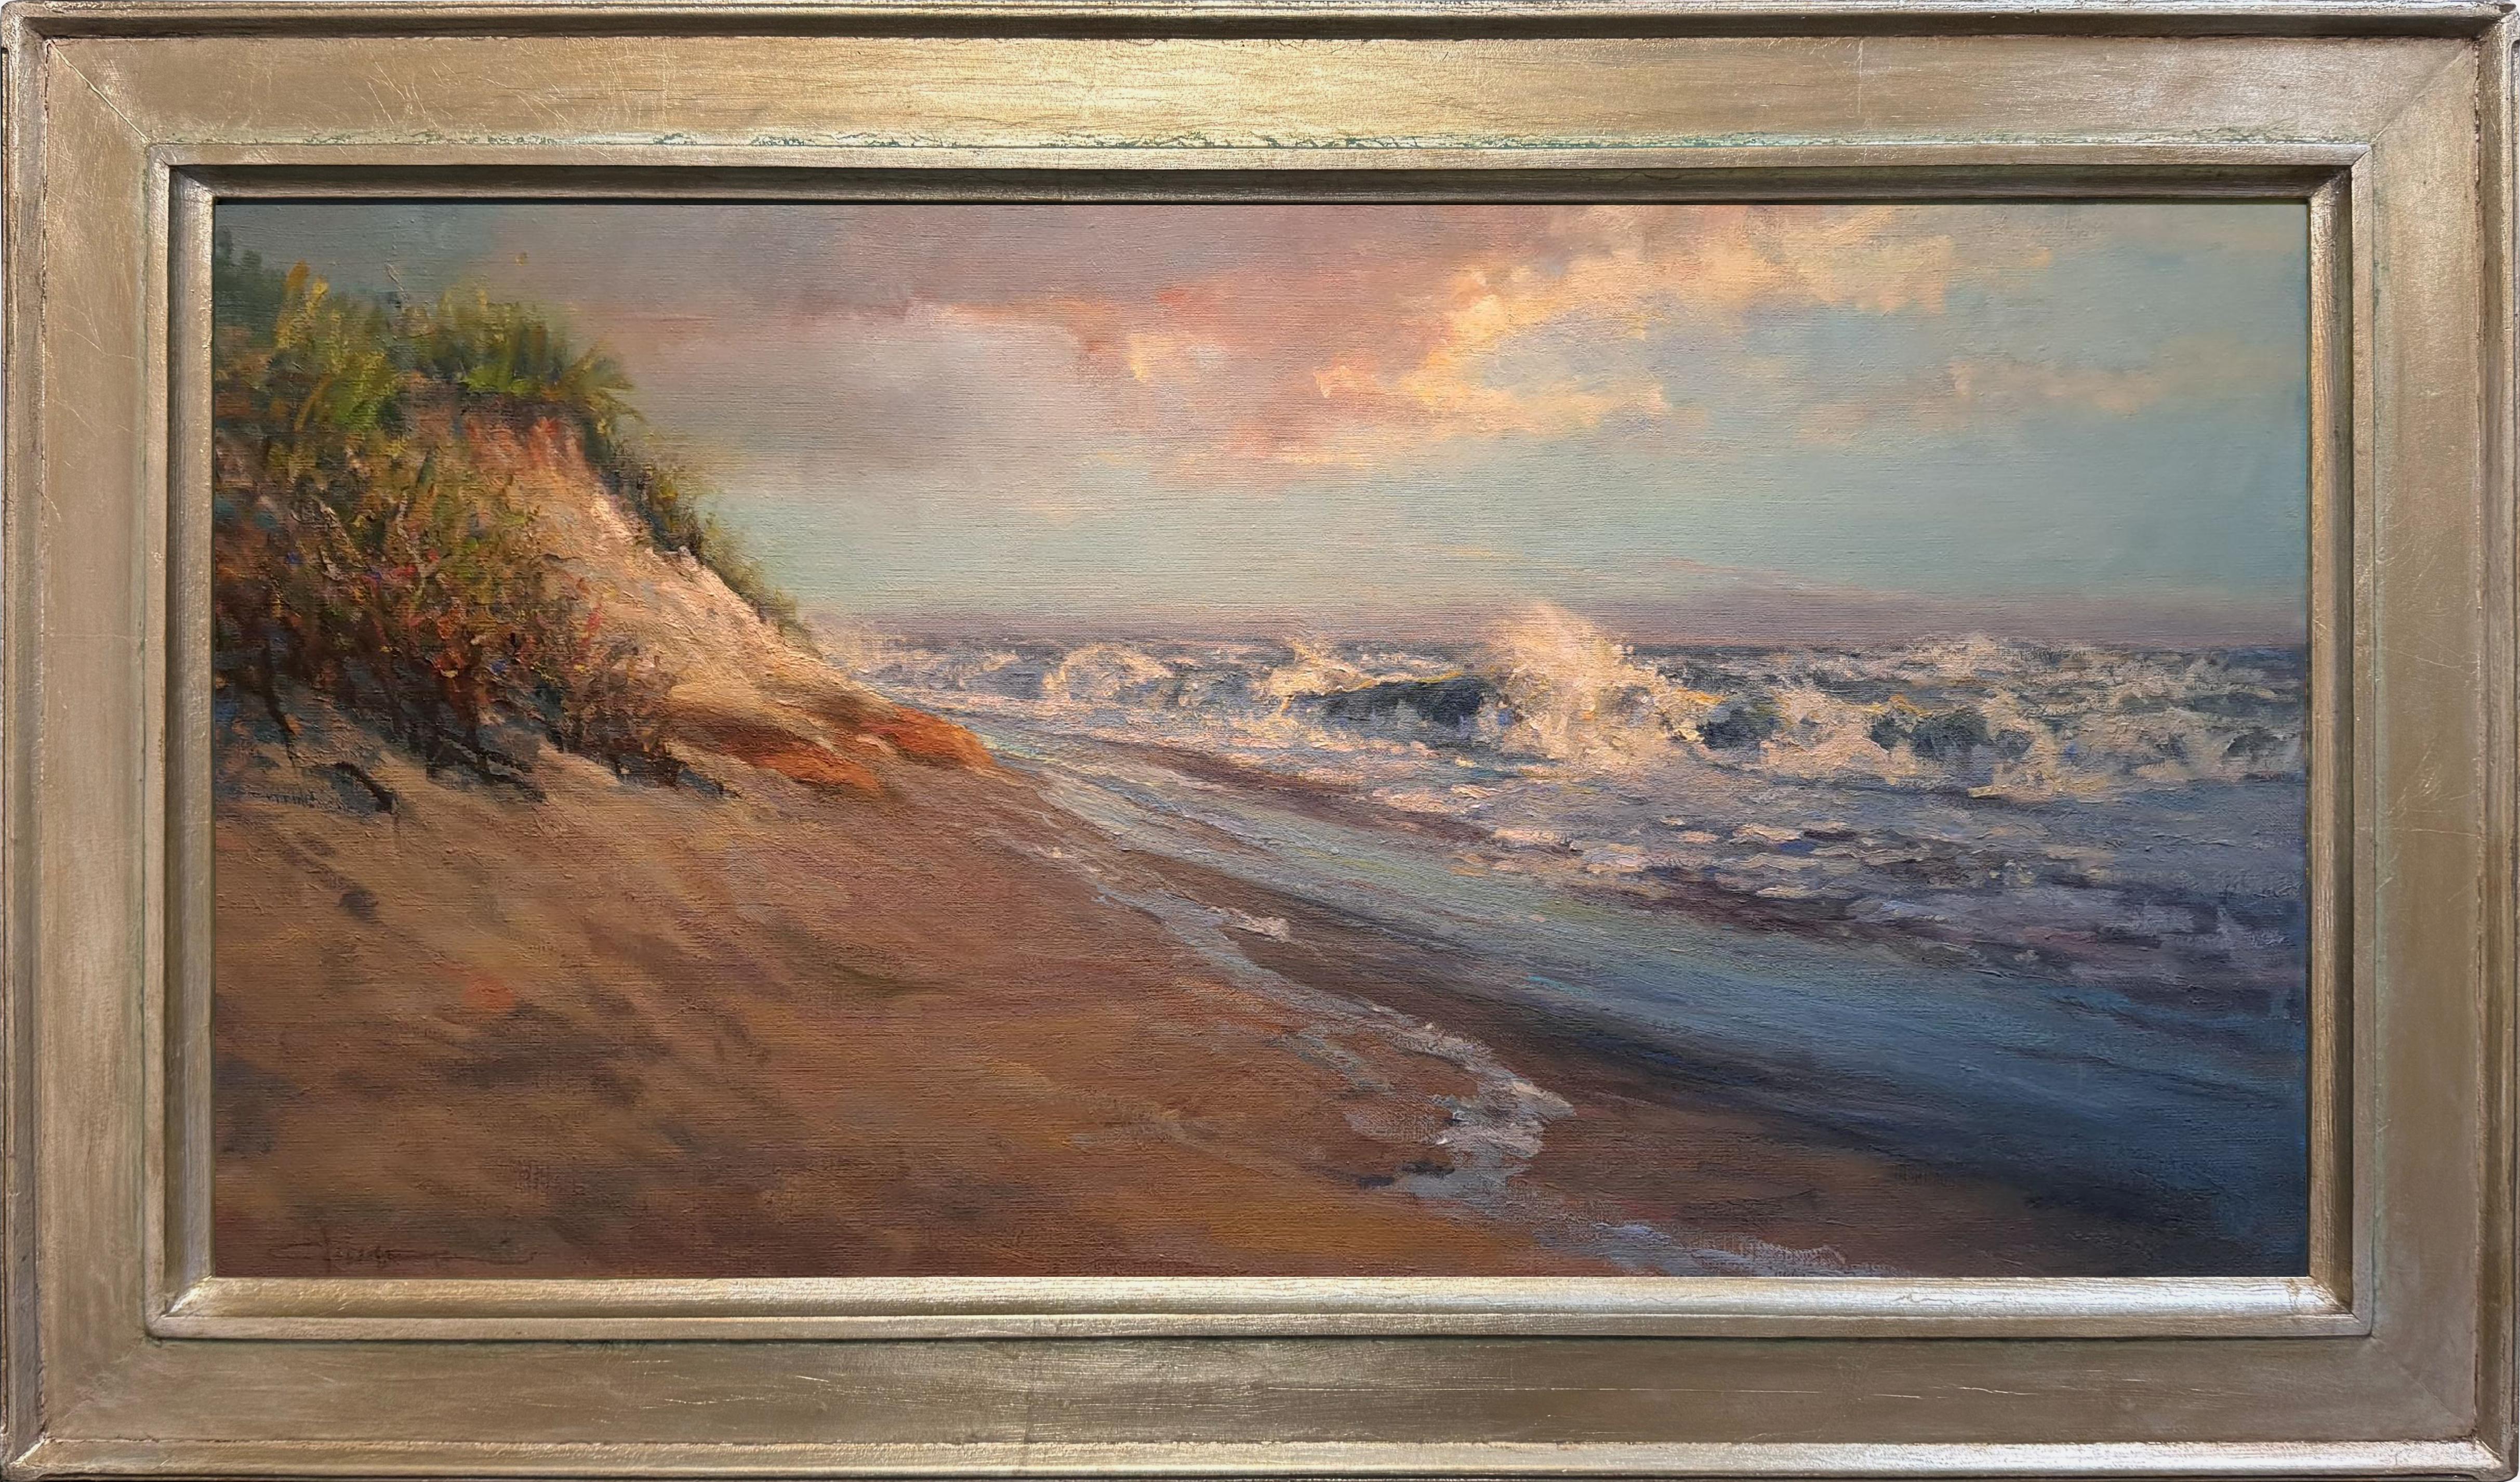 Großer Surf in Madaket, Nantucket – Painting von Louis Guarnaccia